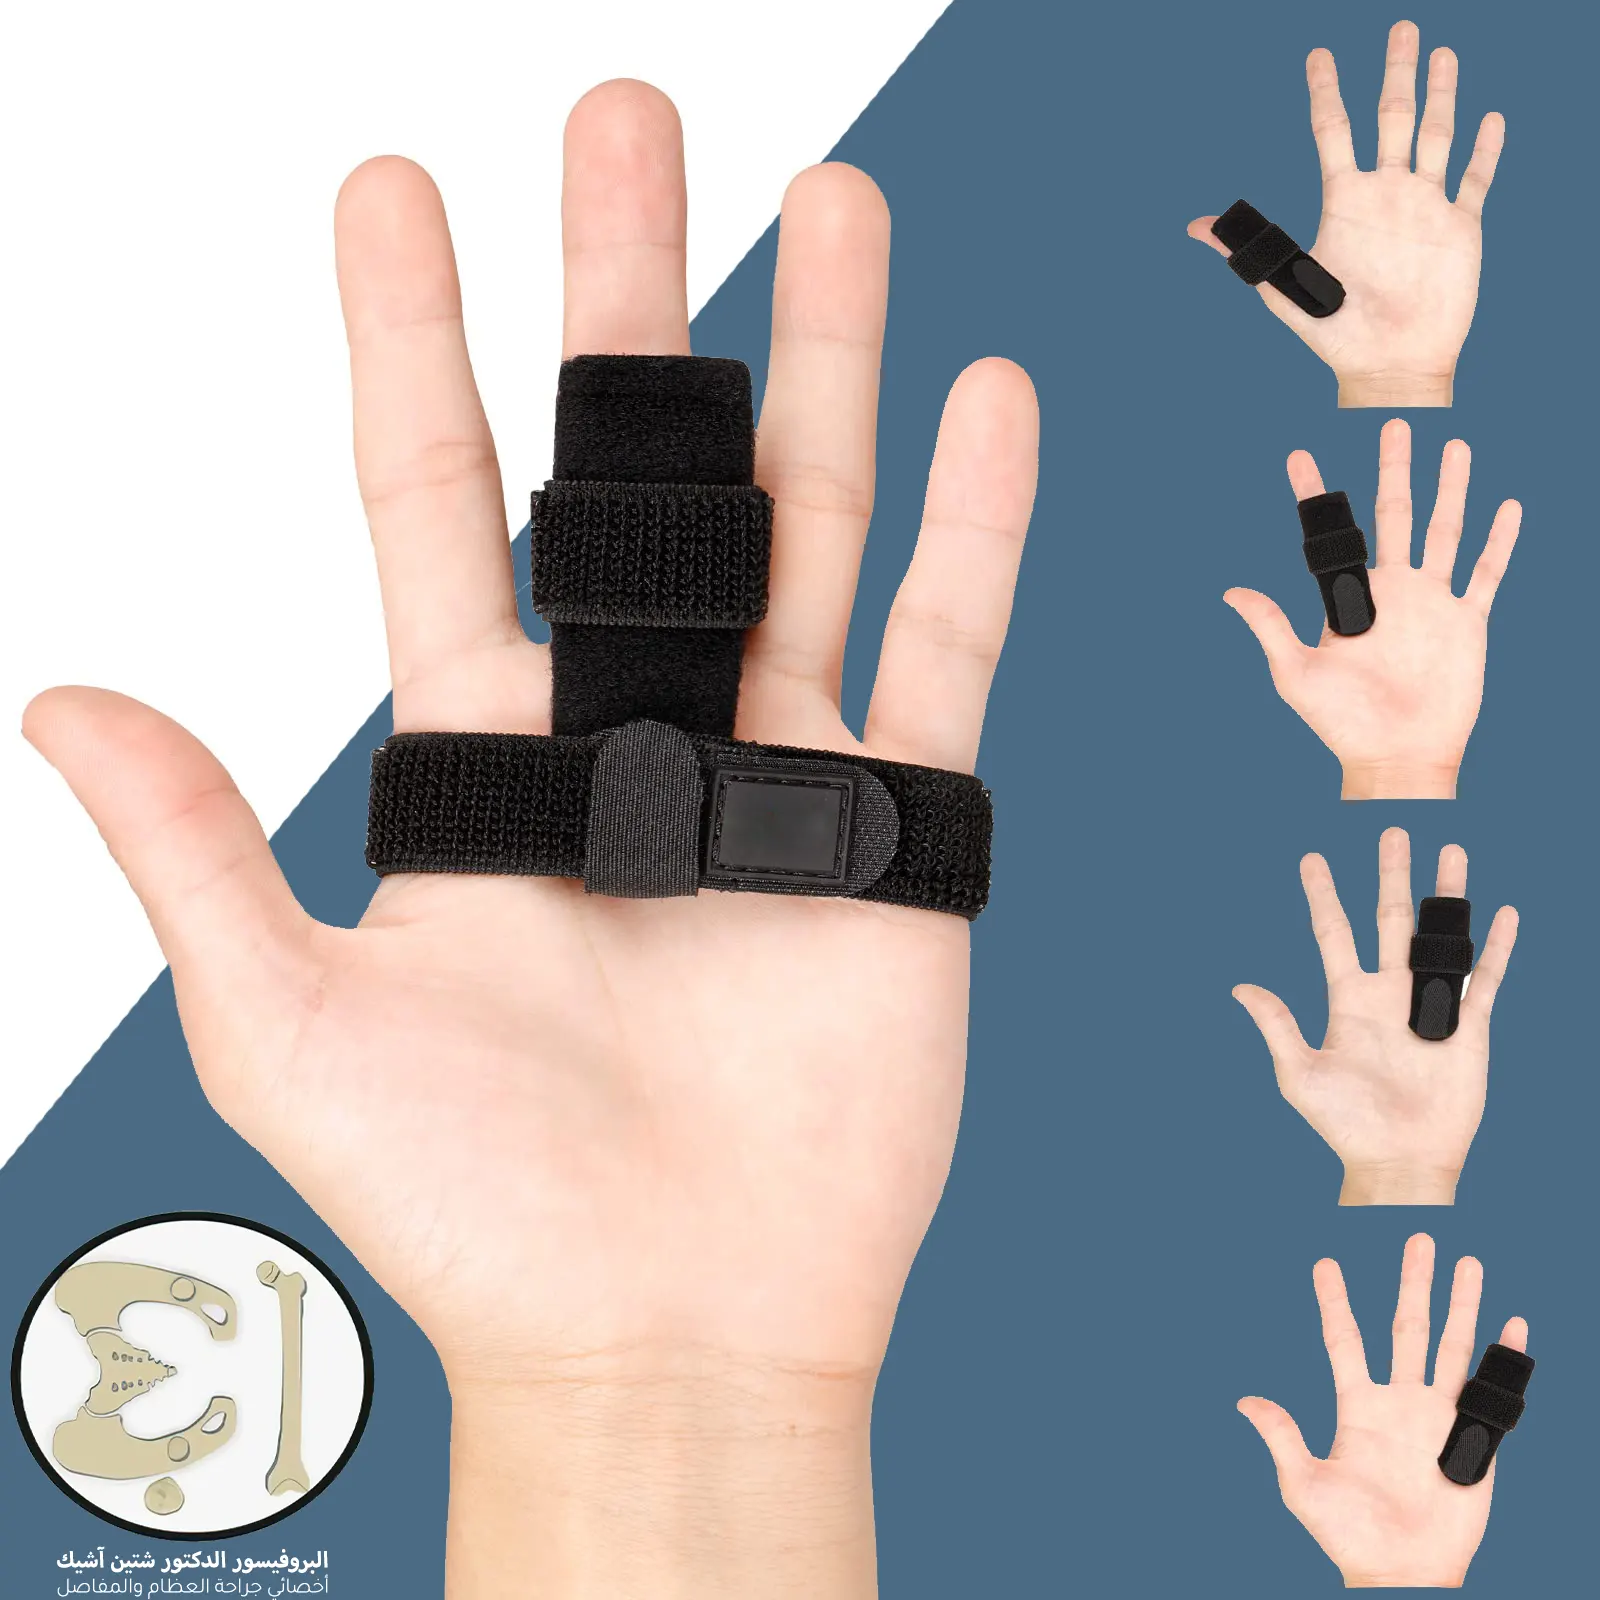 يمكن أن توضع الدعامات على أي إصبع من أصابع اليدين من أجل علاج تيبس مفاصل الأصابع